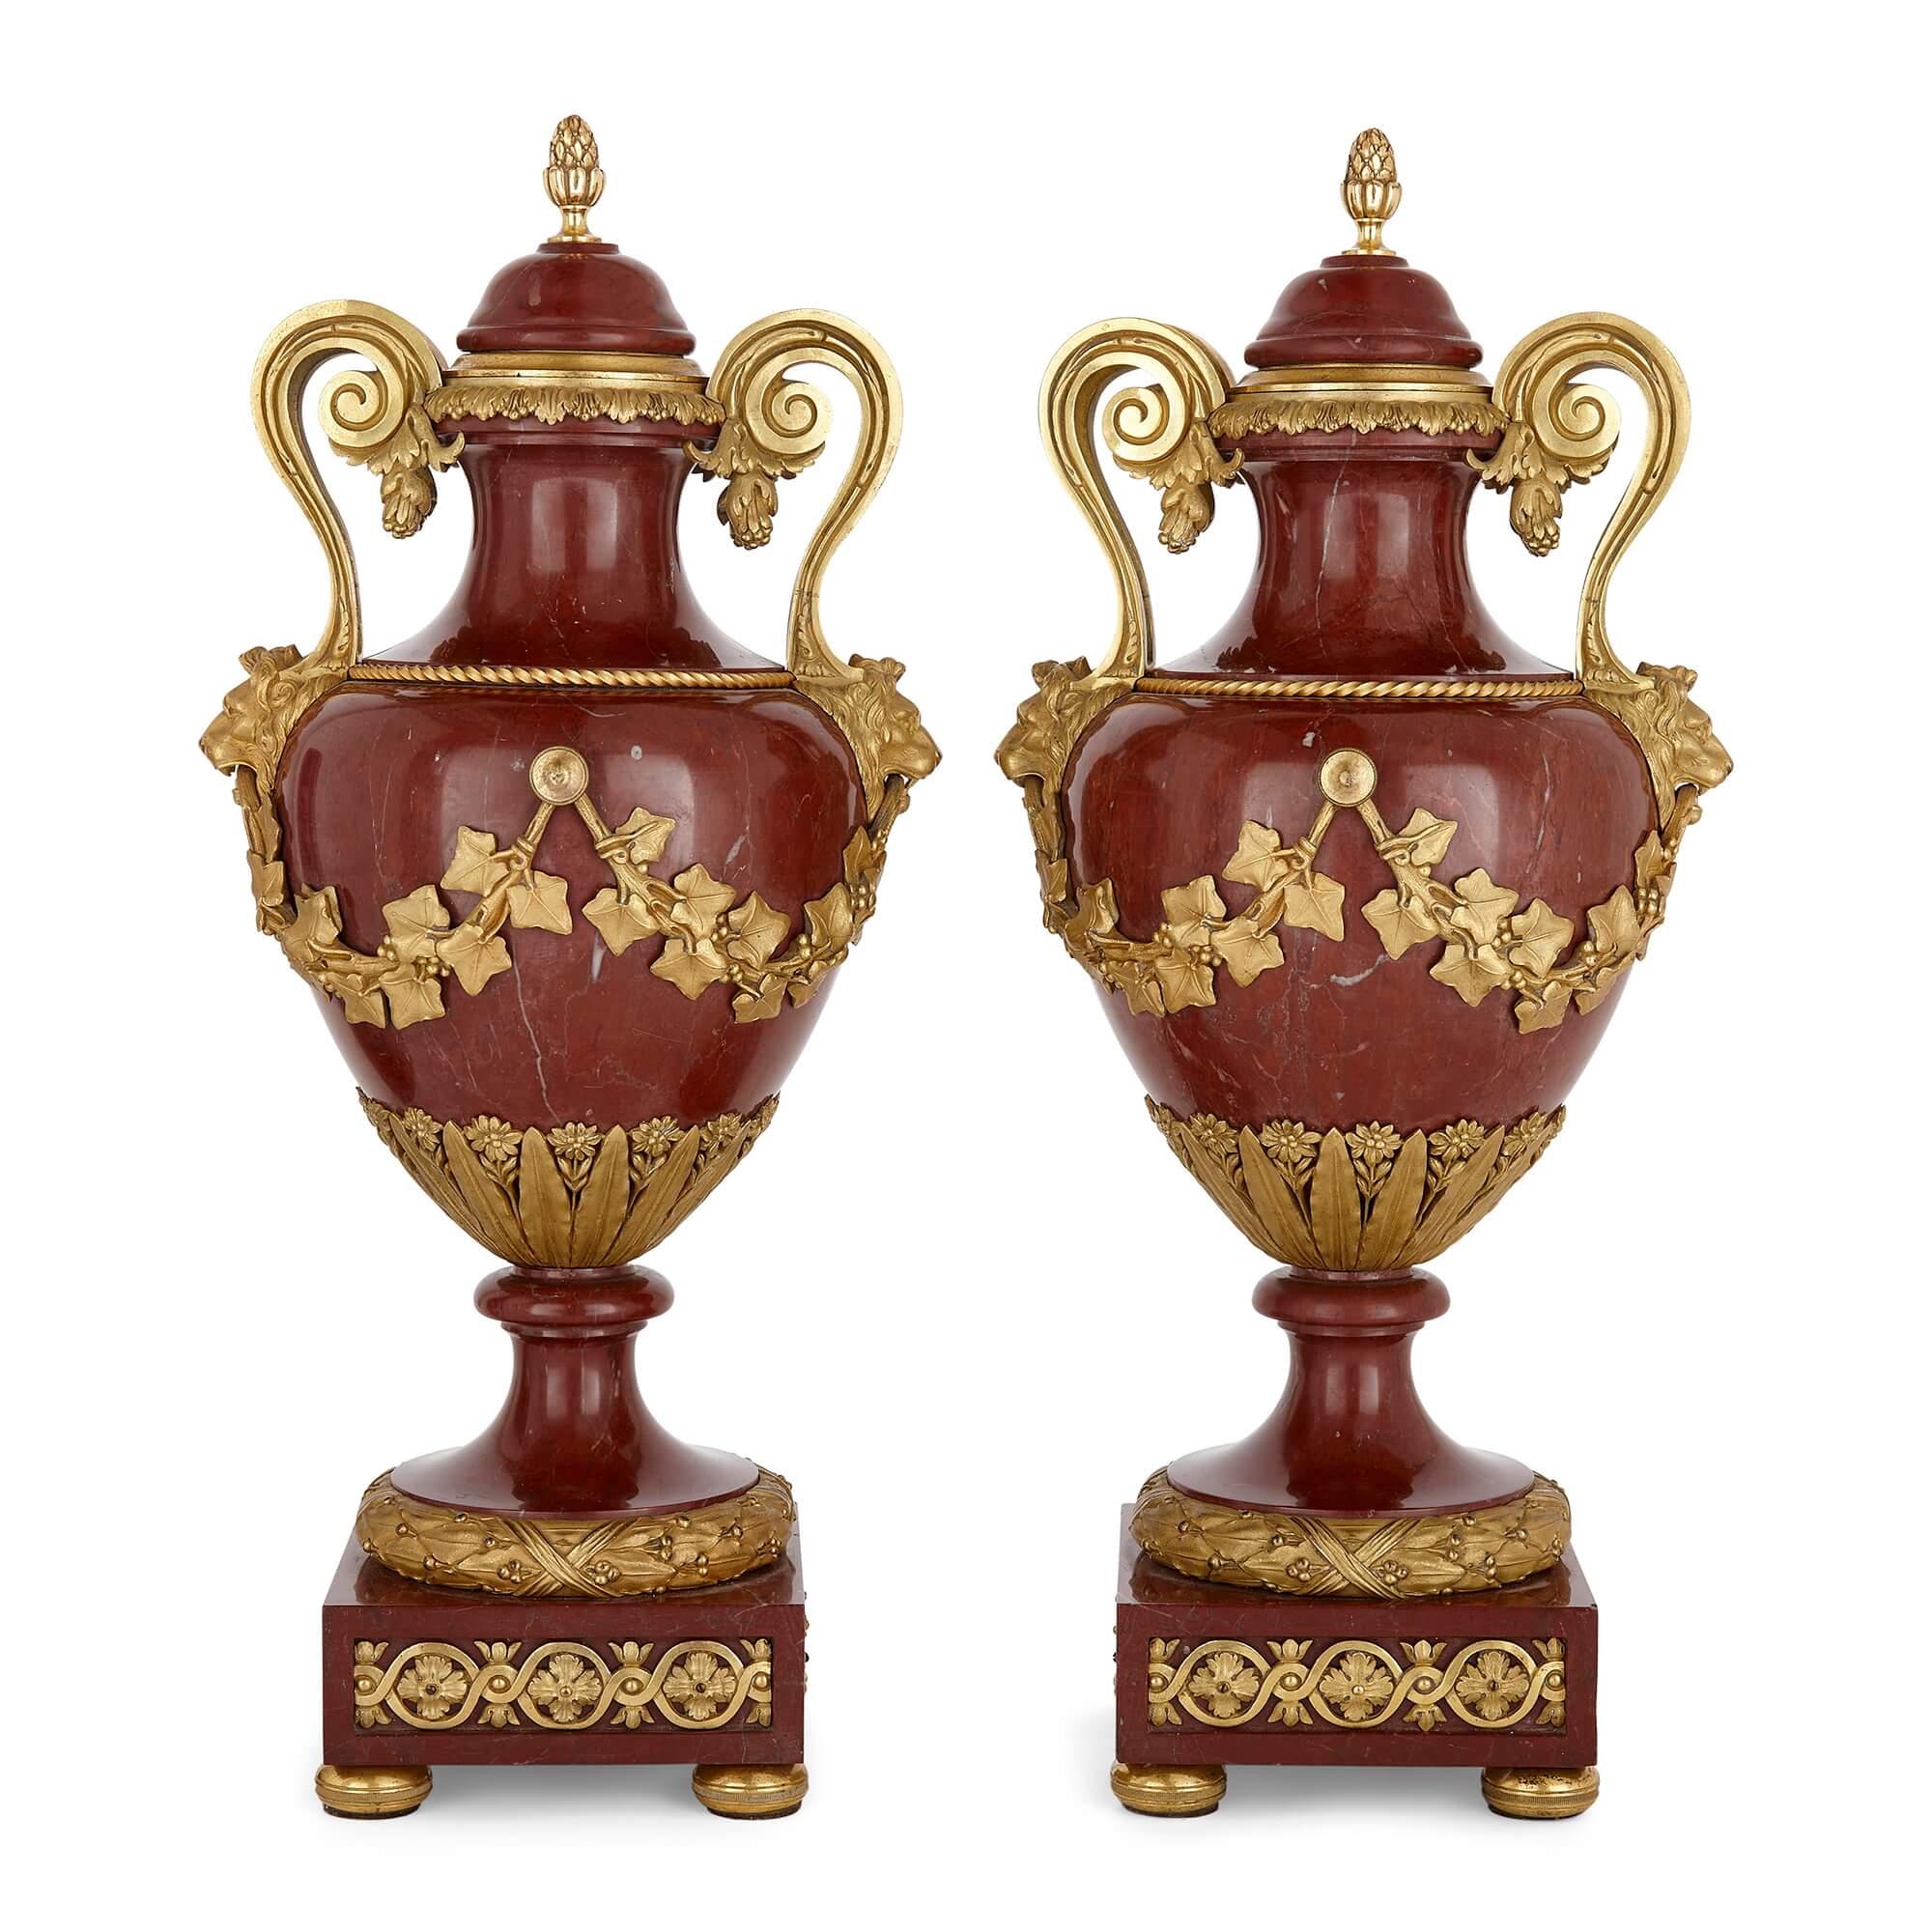 Paar französische Vasen aus Marmor und vergoldeter Bronze von Henry Dasson
Französisch, 1890
Höhe 44cm, Breite 21cm, Tiefe 18cm

1890 schuf der bekannte französische Kunsthandwerker Henry Dasson (1825-1896) dieses Vasenpaar, das sowohl Grandeur als